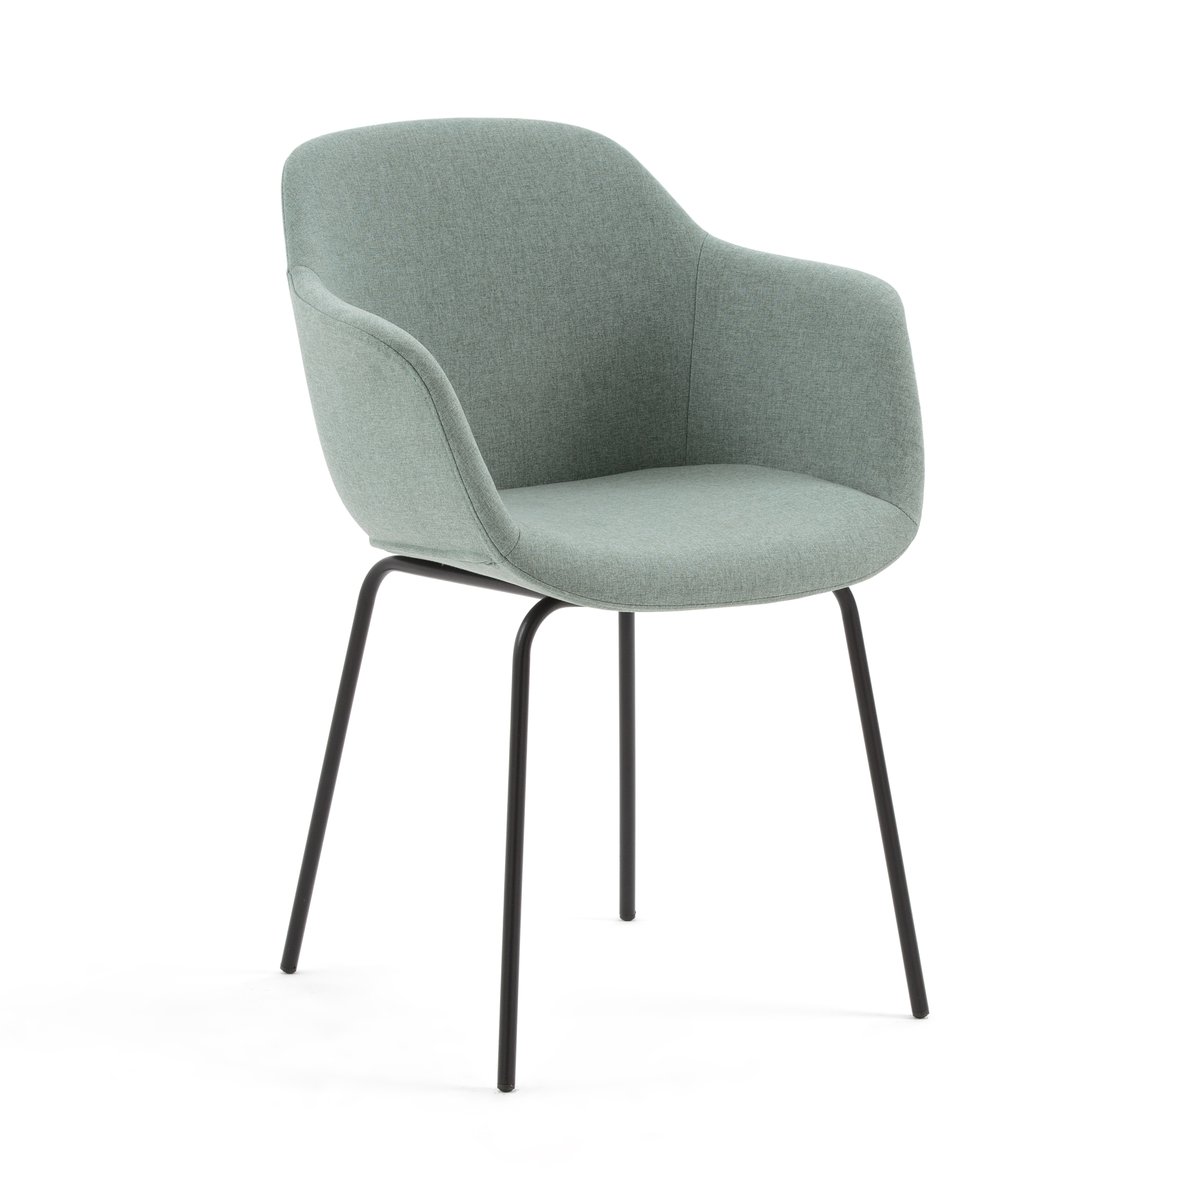 Кресло Для стола HALVA единый размер зеленый